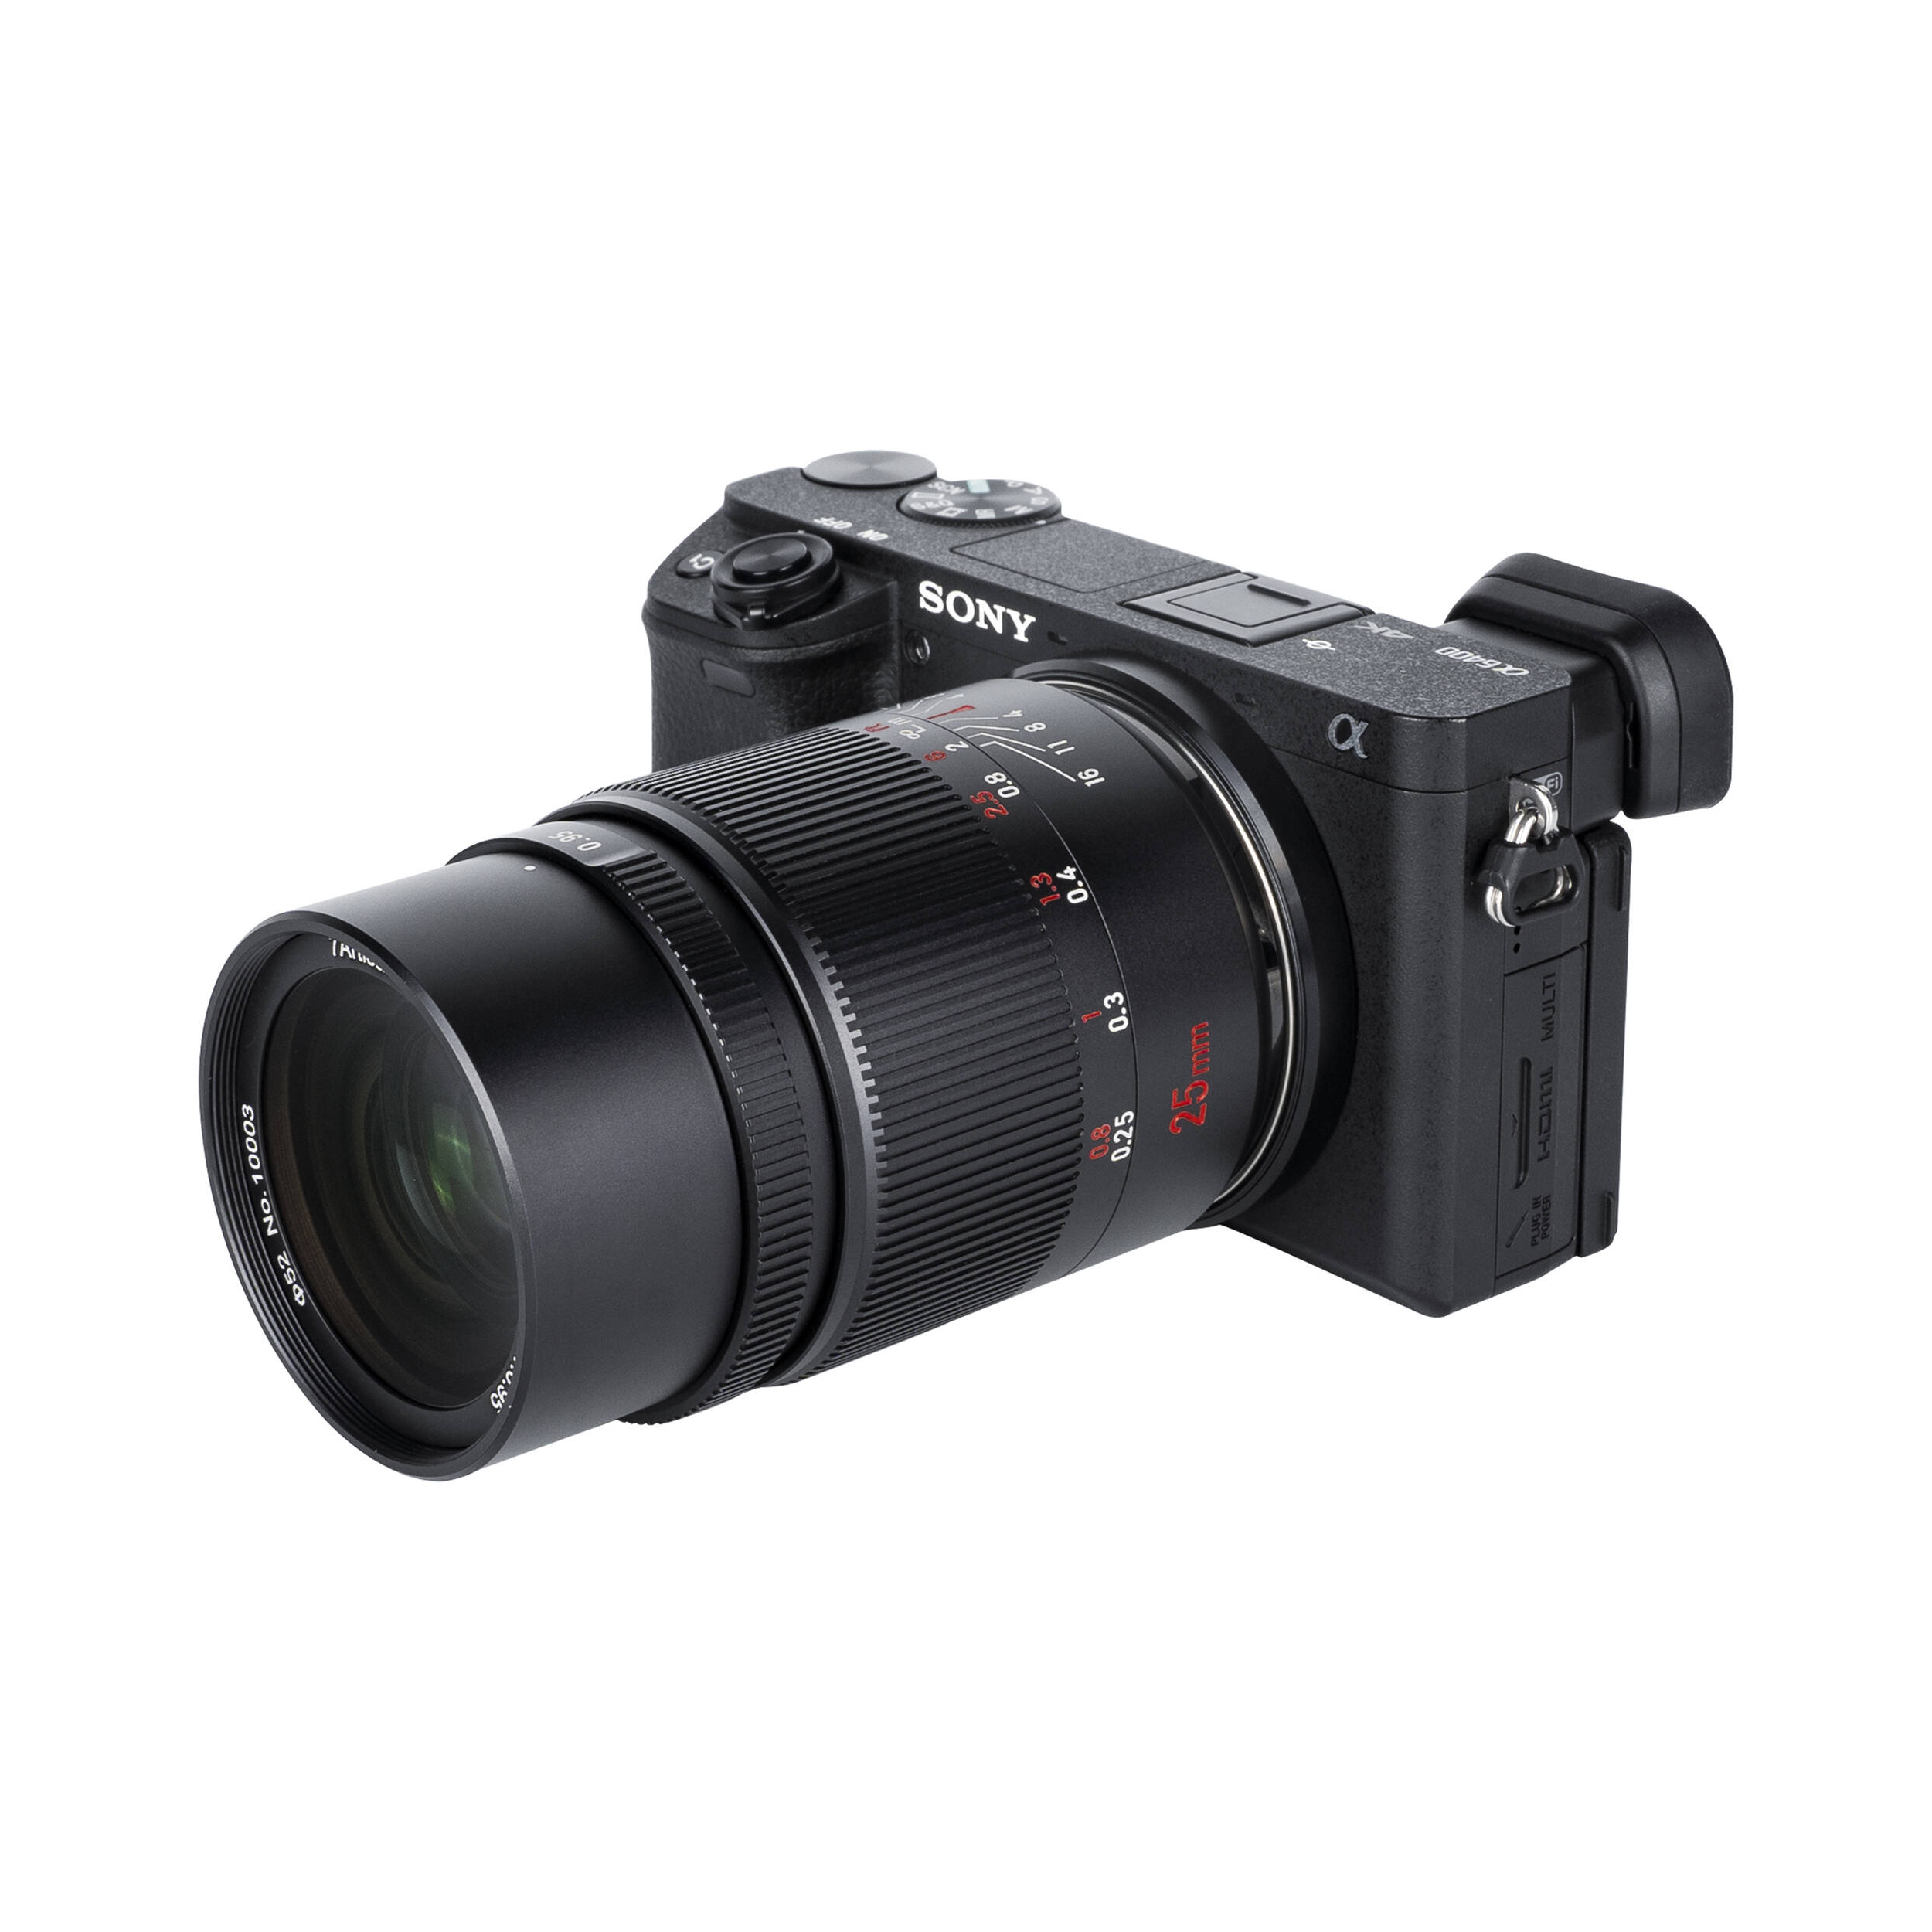 7artisans Photoelectric 25mm f/0.95 Lens for Sony E Mount